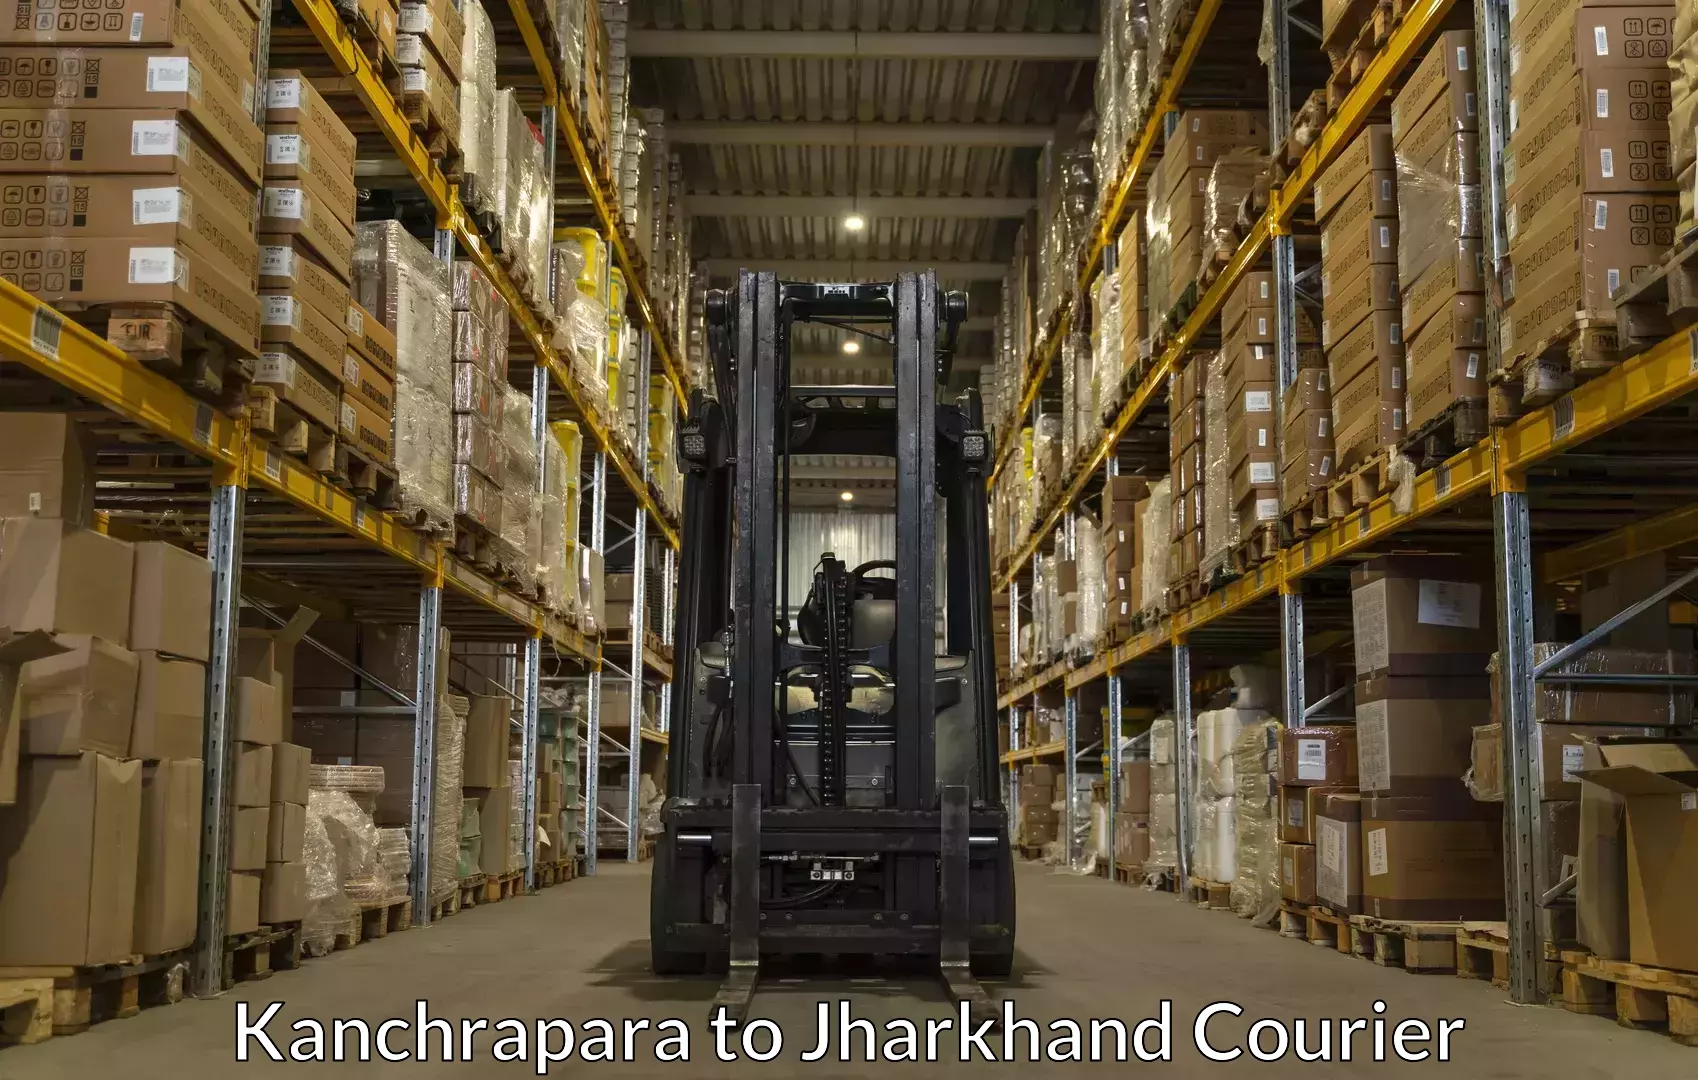 Luggage shipping guide Kanchrapara to Adityapur